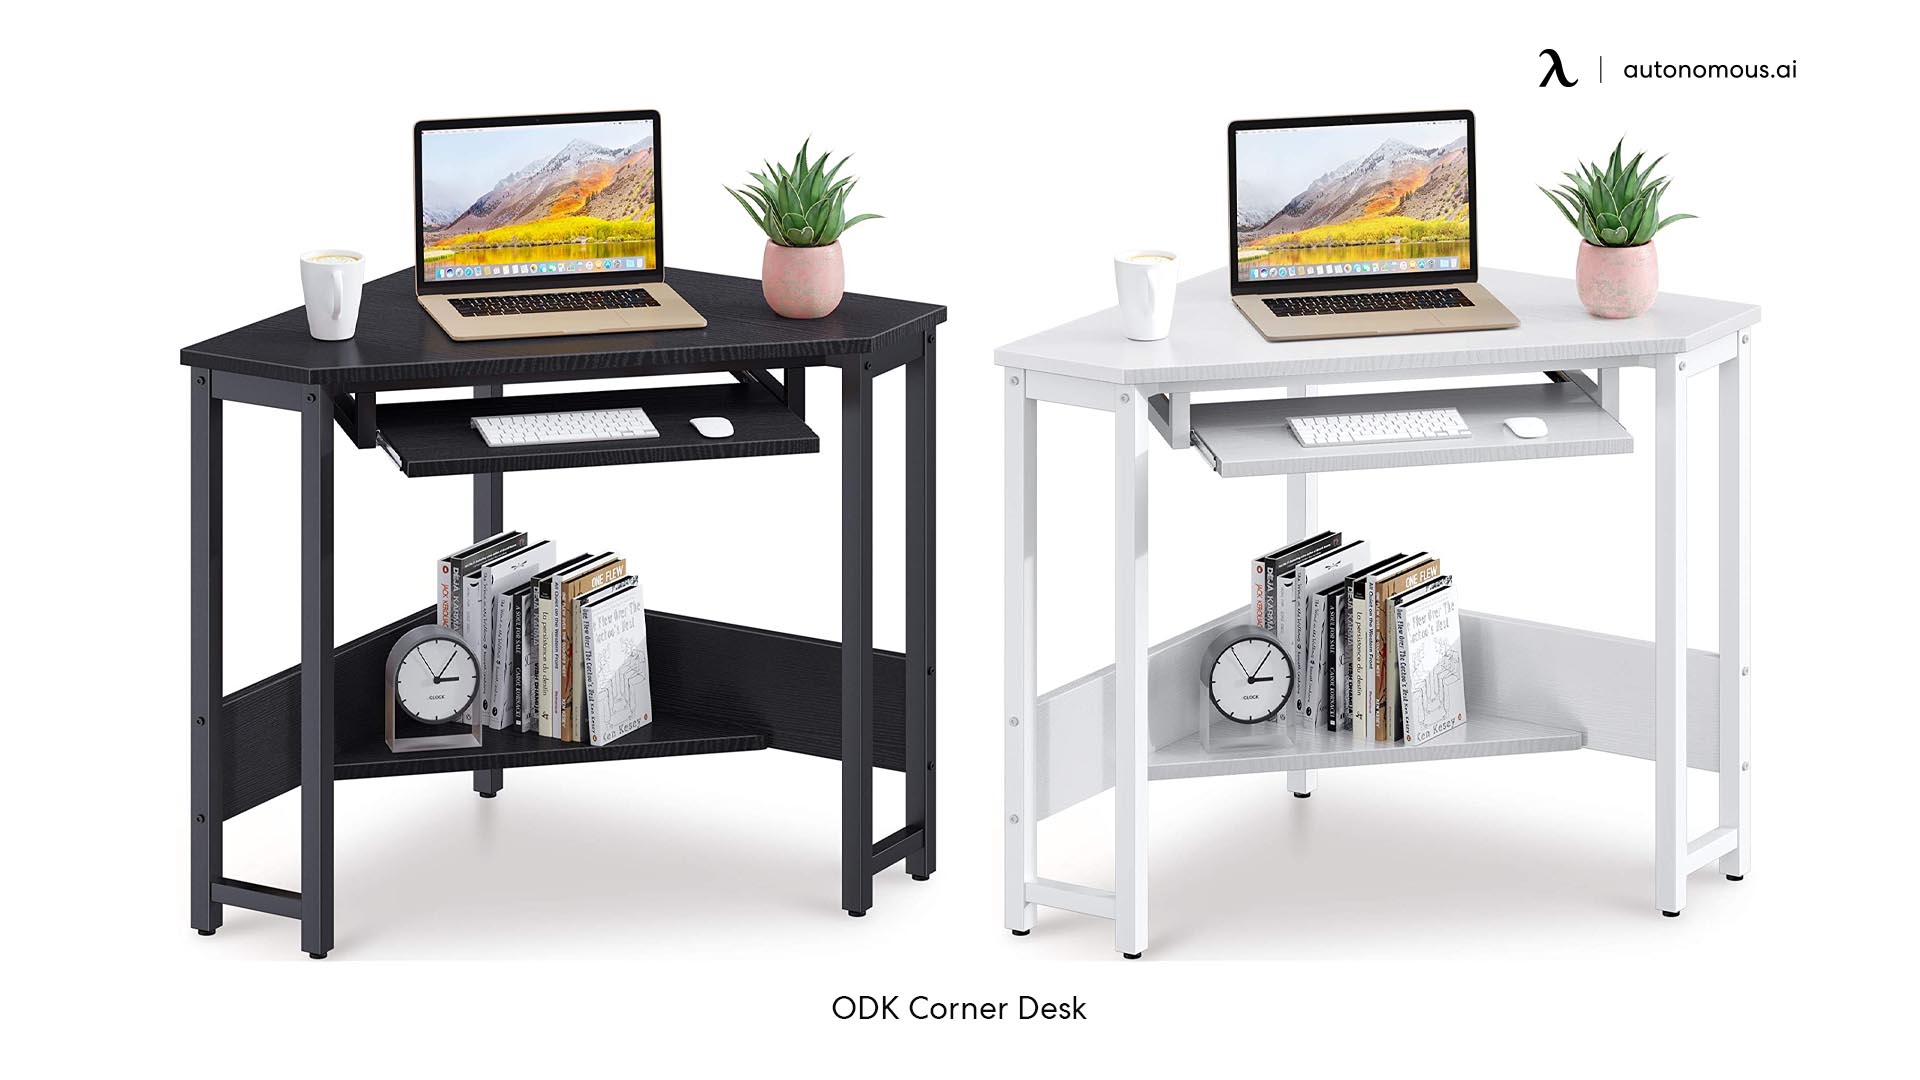 ODK Vintage Corner Desk for corner workstation